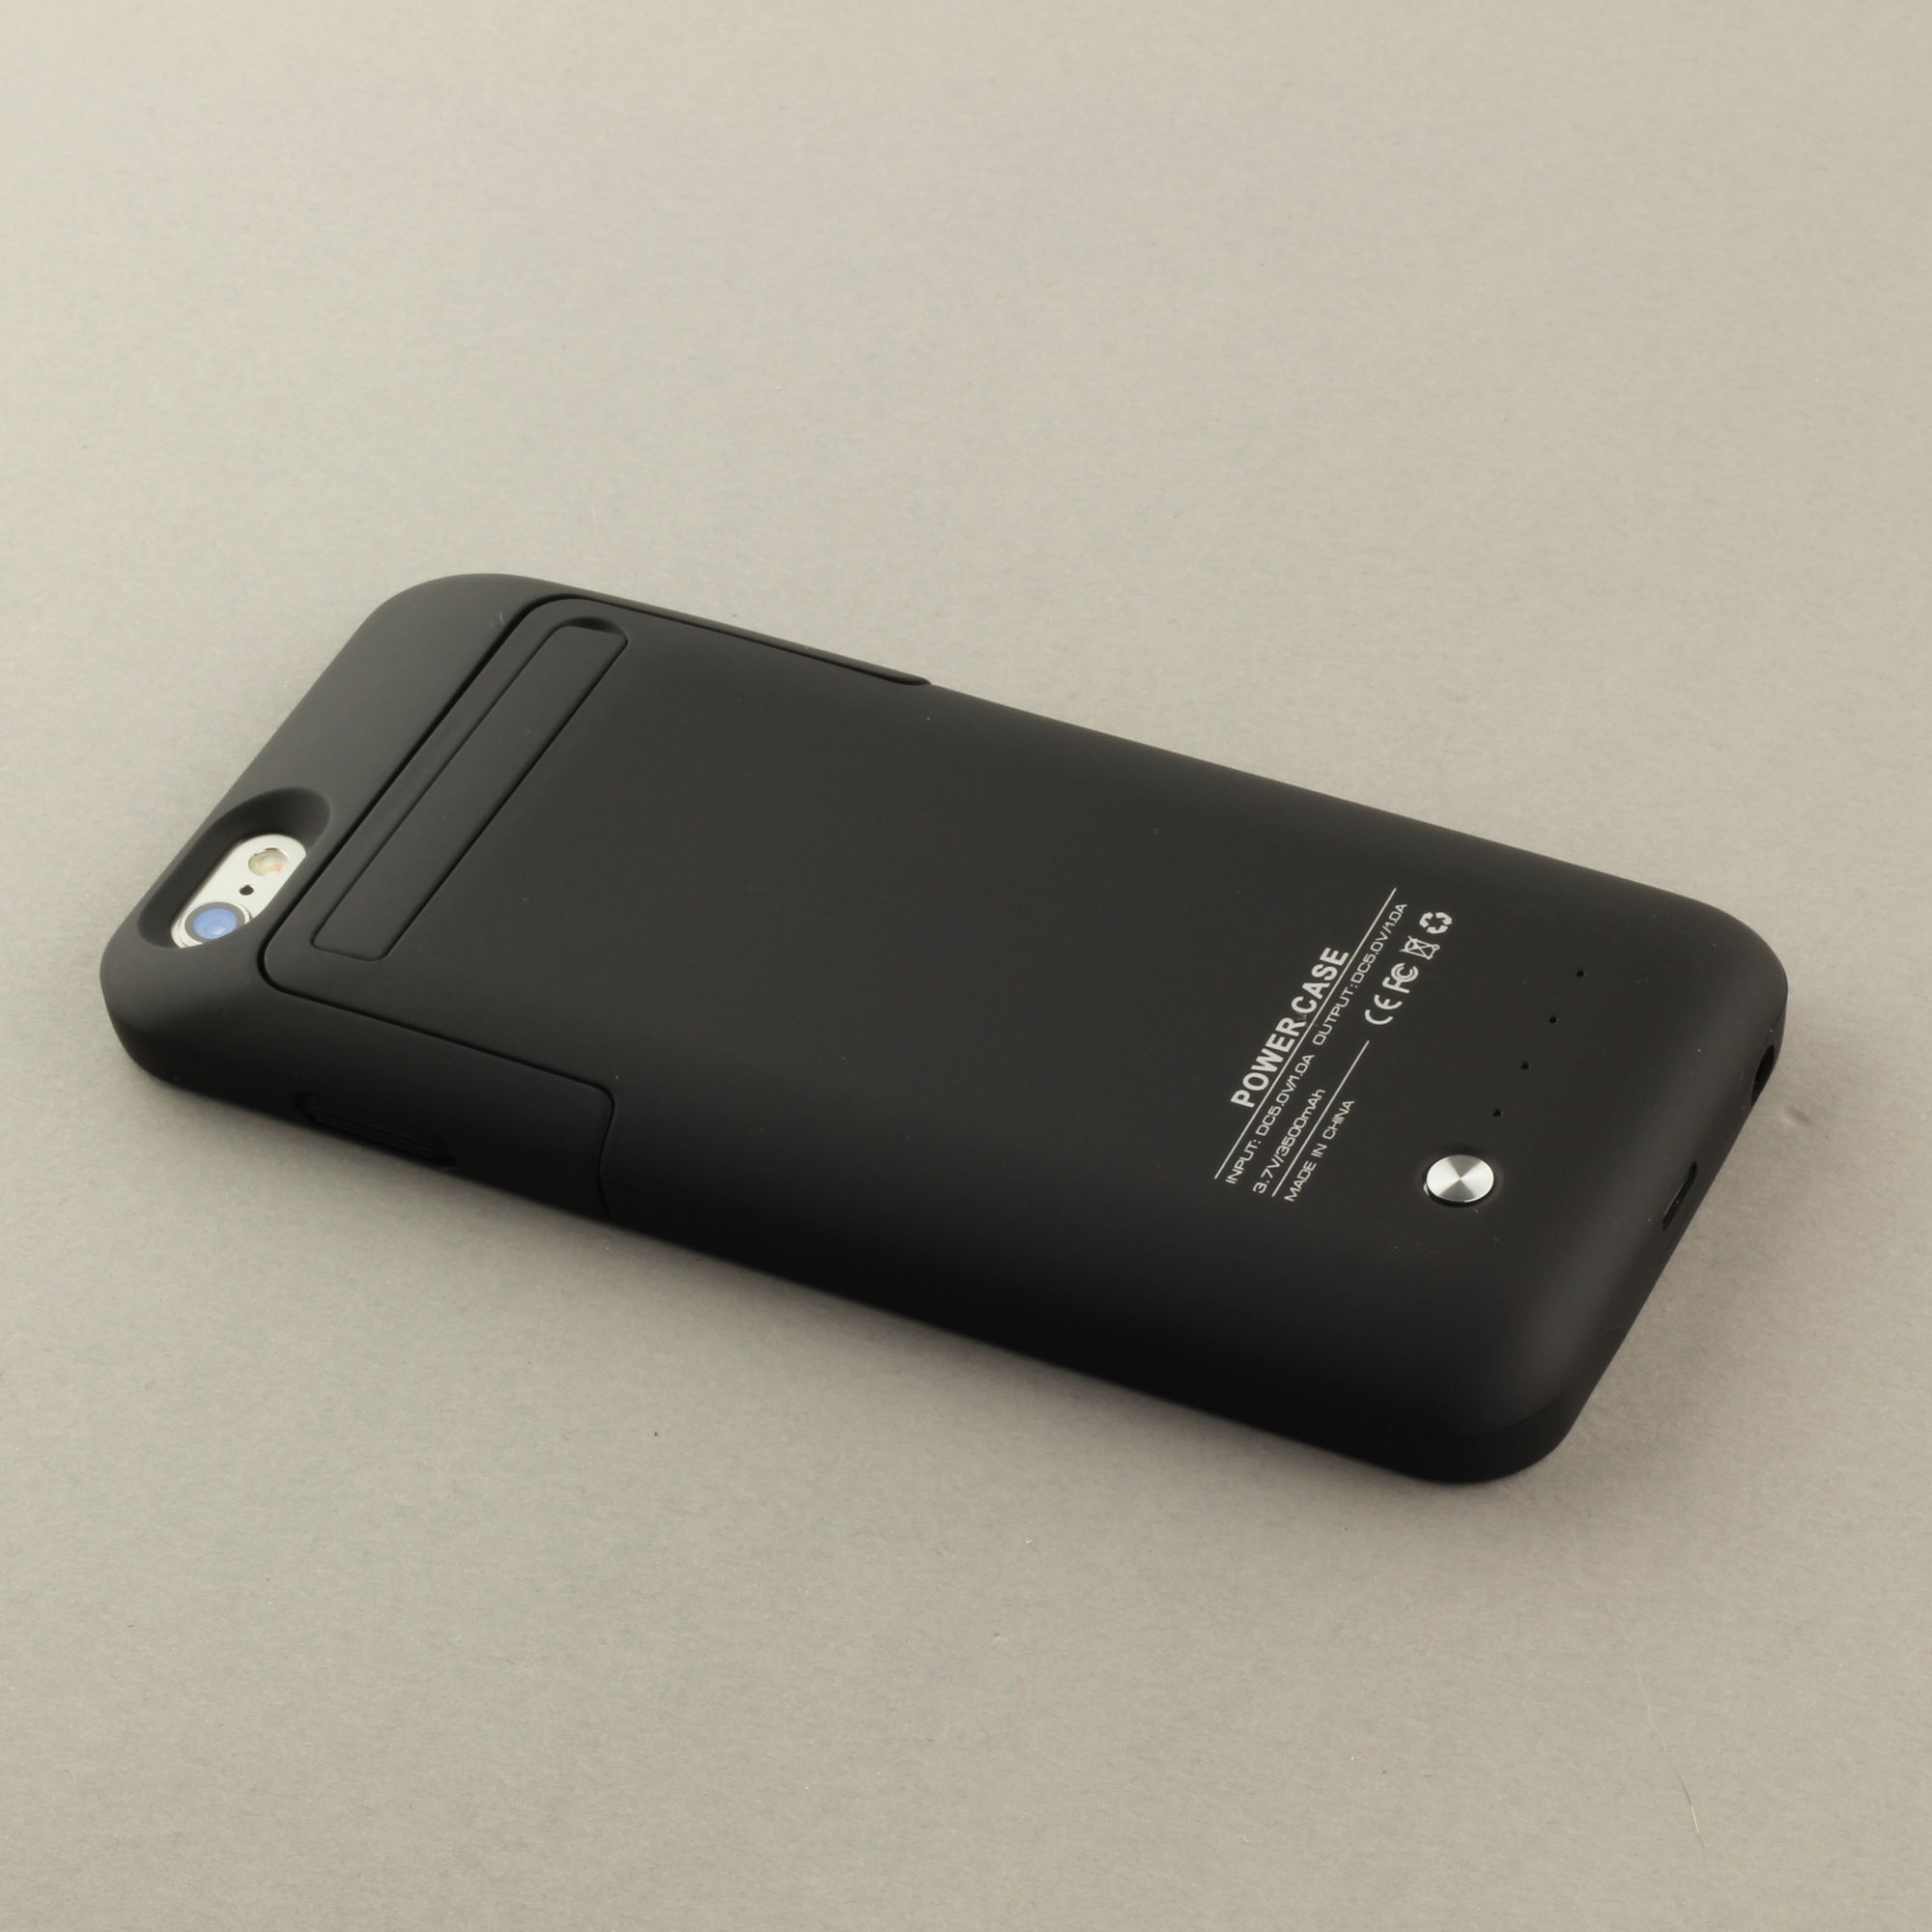 iPhone 8 Plus Chargeur Case Etuis Magnétique Intégré Slim Pack bBatterie Externe Rechargeable pour iPhone 8 Plus/ 7 Plus/ 6S Plus/ 6 Plus Rouge Batterie Coque 4200mAh pour iPhone 7 Plus 